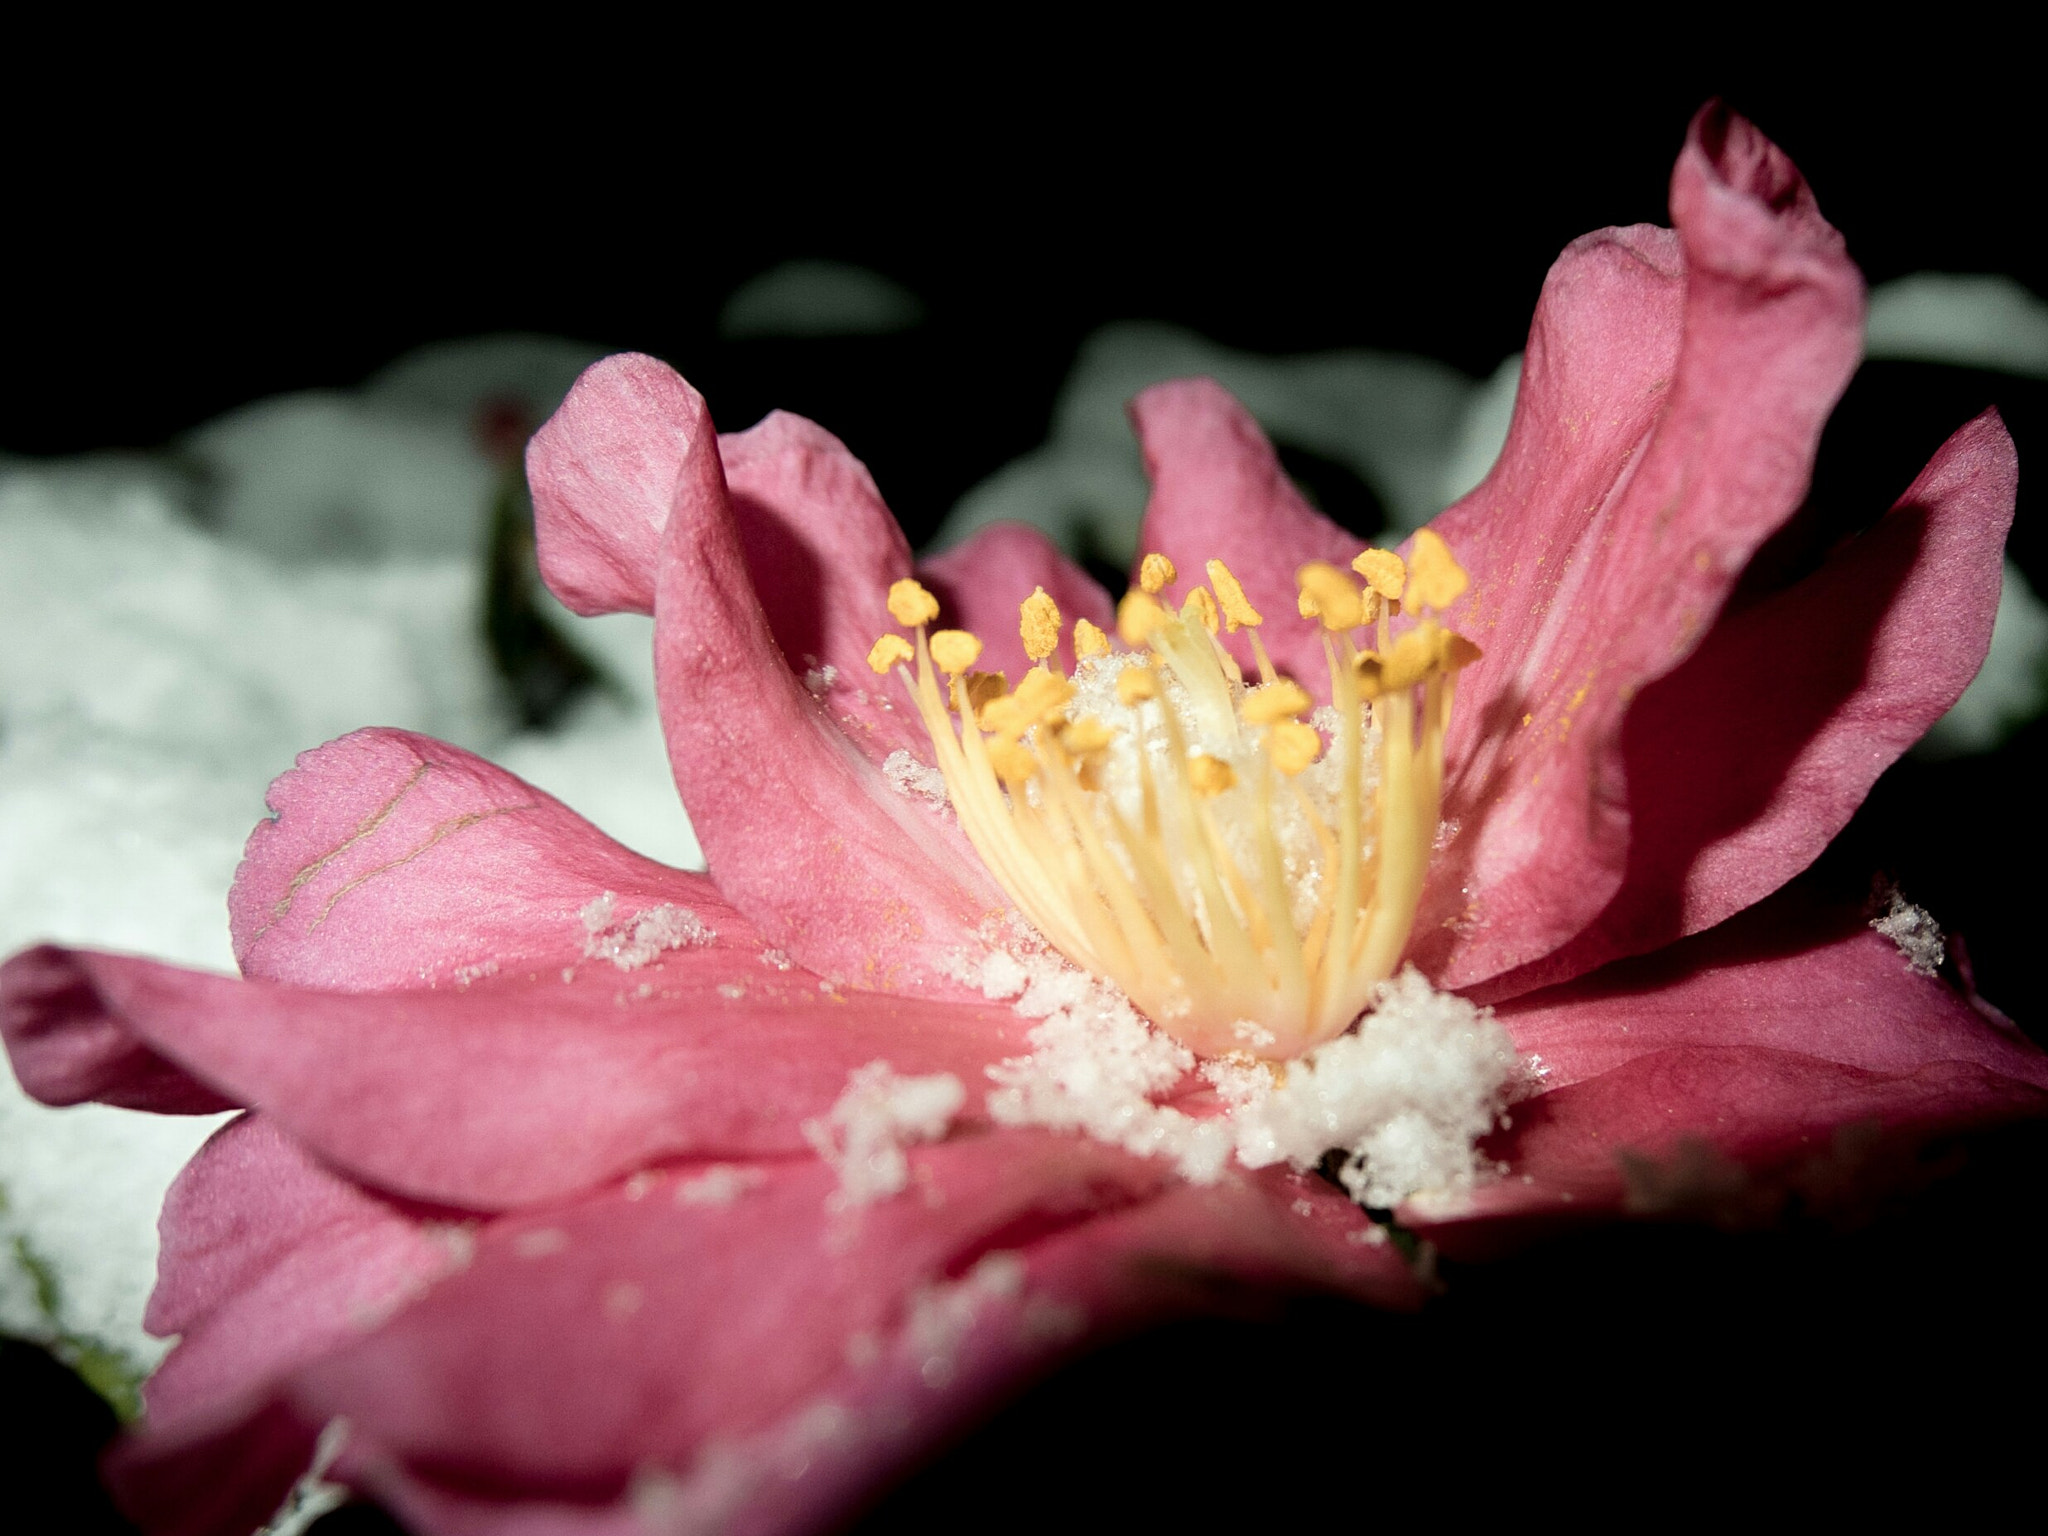 Fujifilm XF1 sample photo. Camellia sasanqua photography